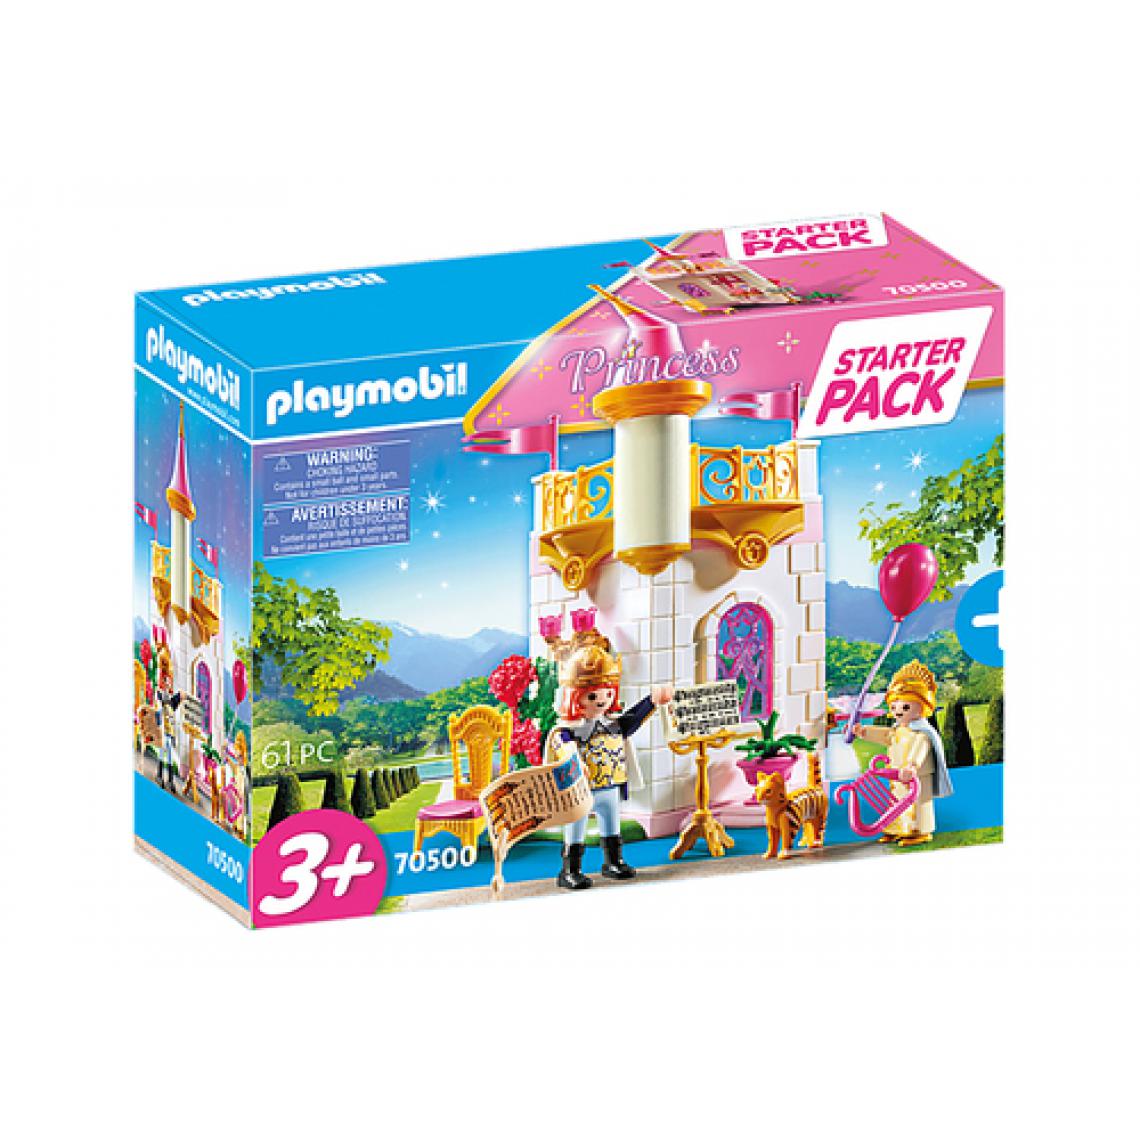 Playmobil - 70500 Starter Pack Tourelle royale, Playmobil Princess - Playmobil